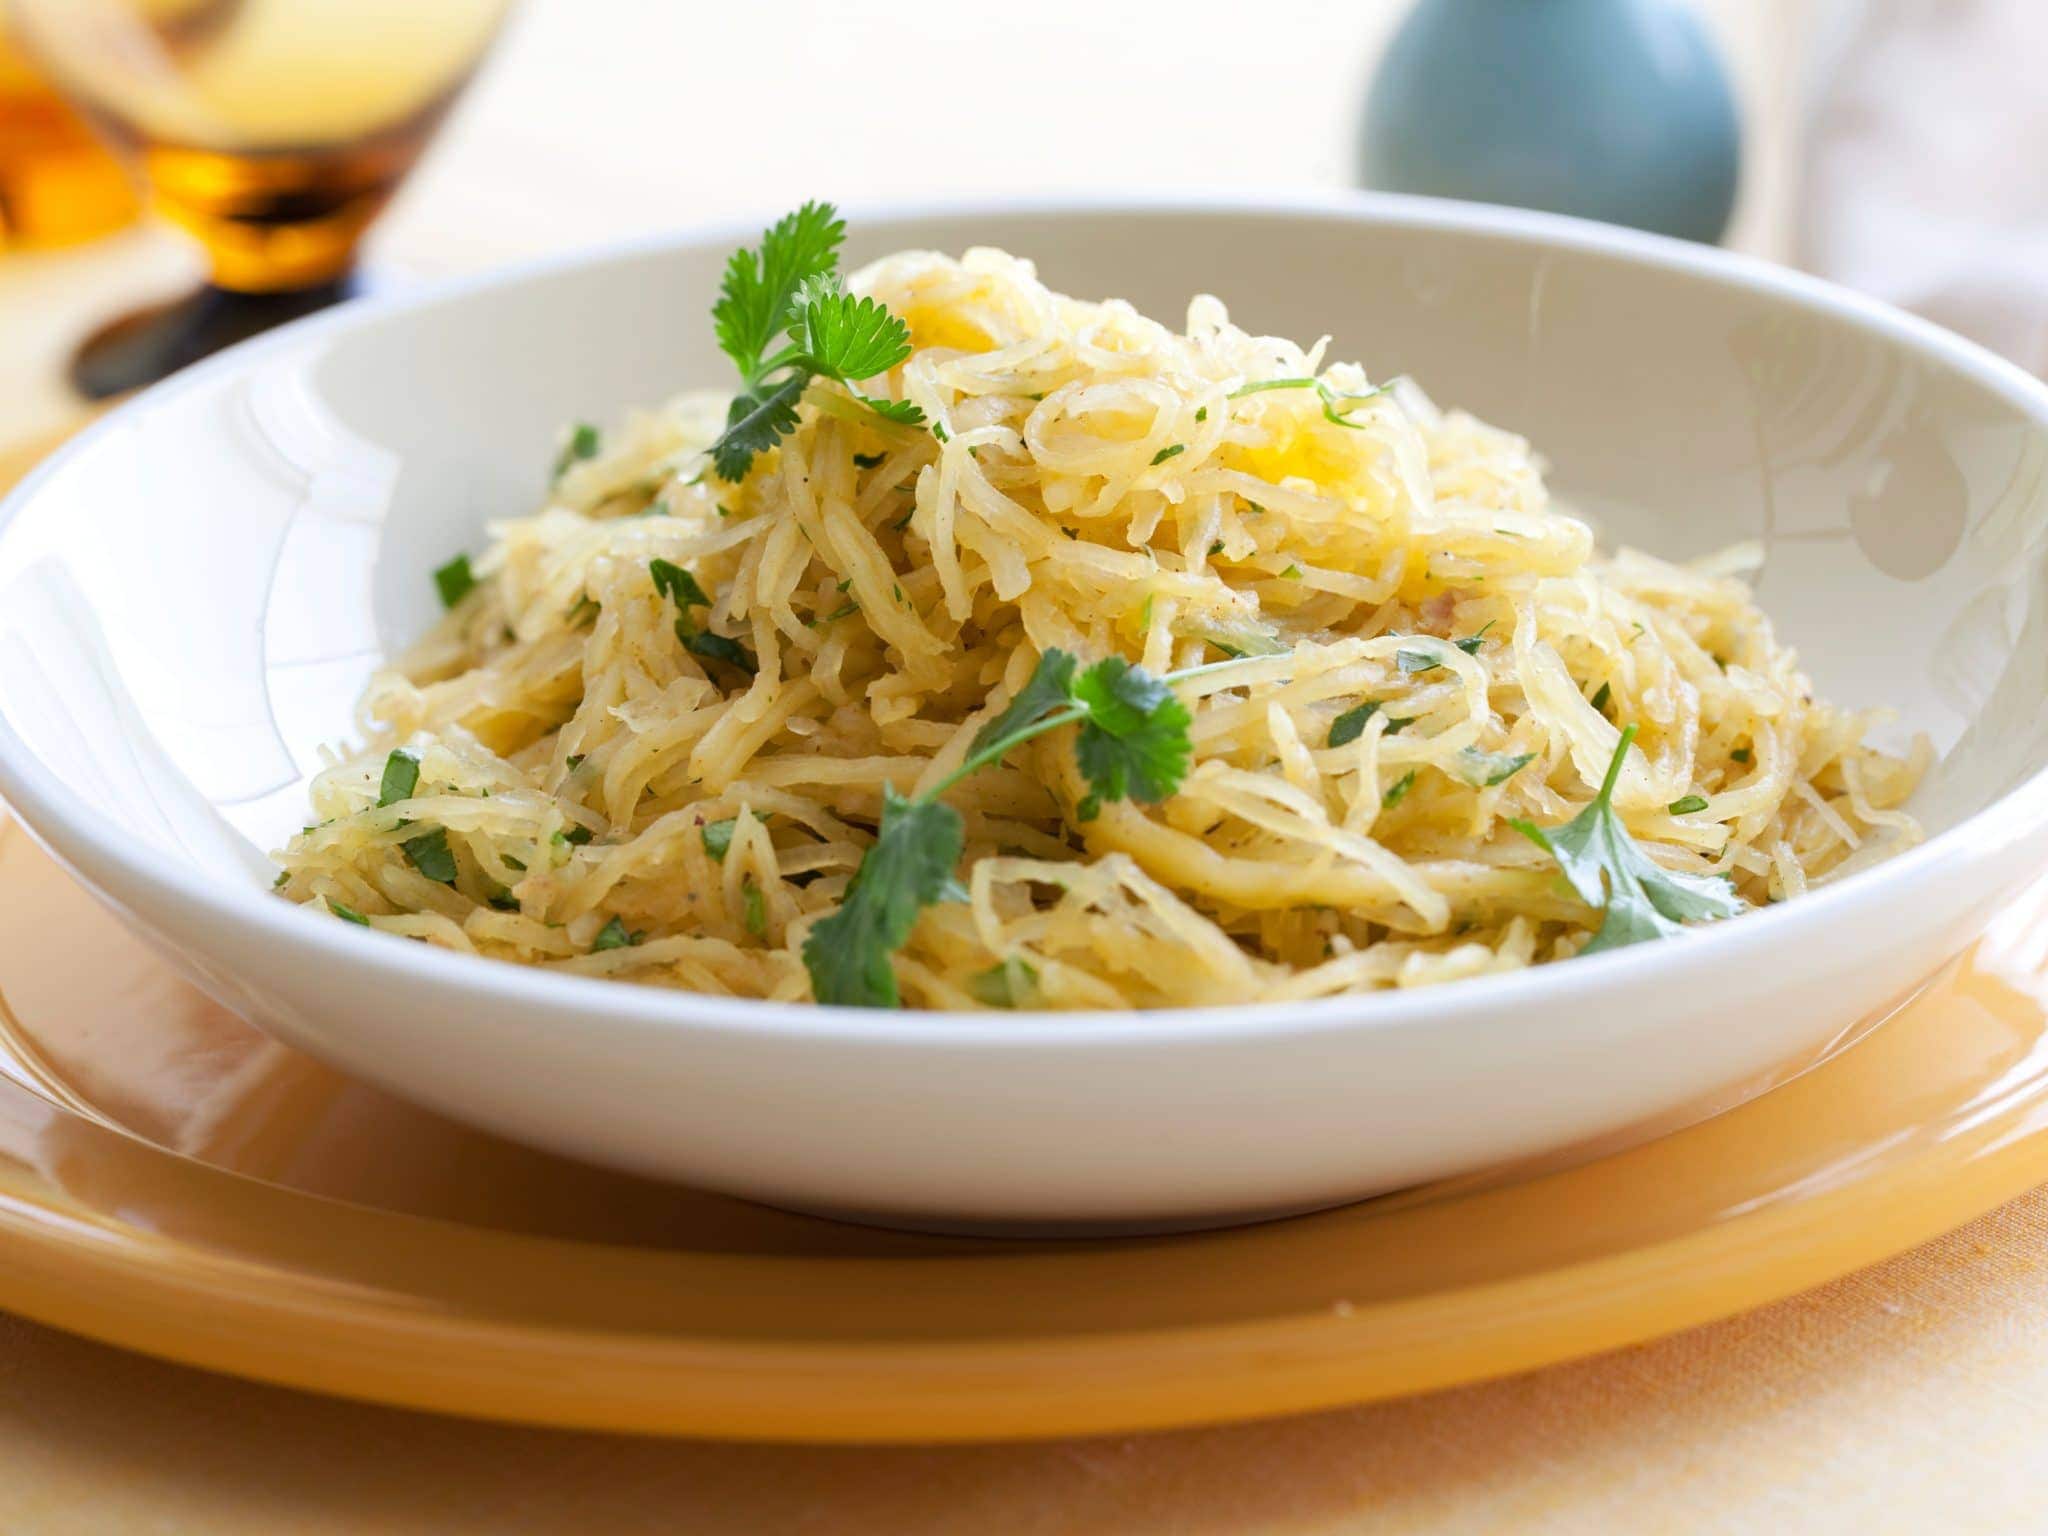 The origin of spaghetti might surprise you.